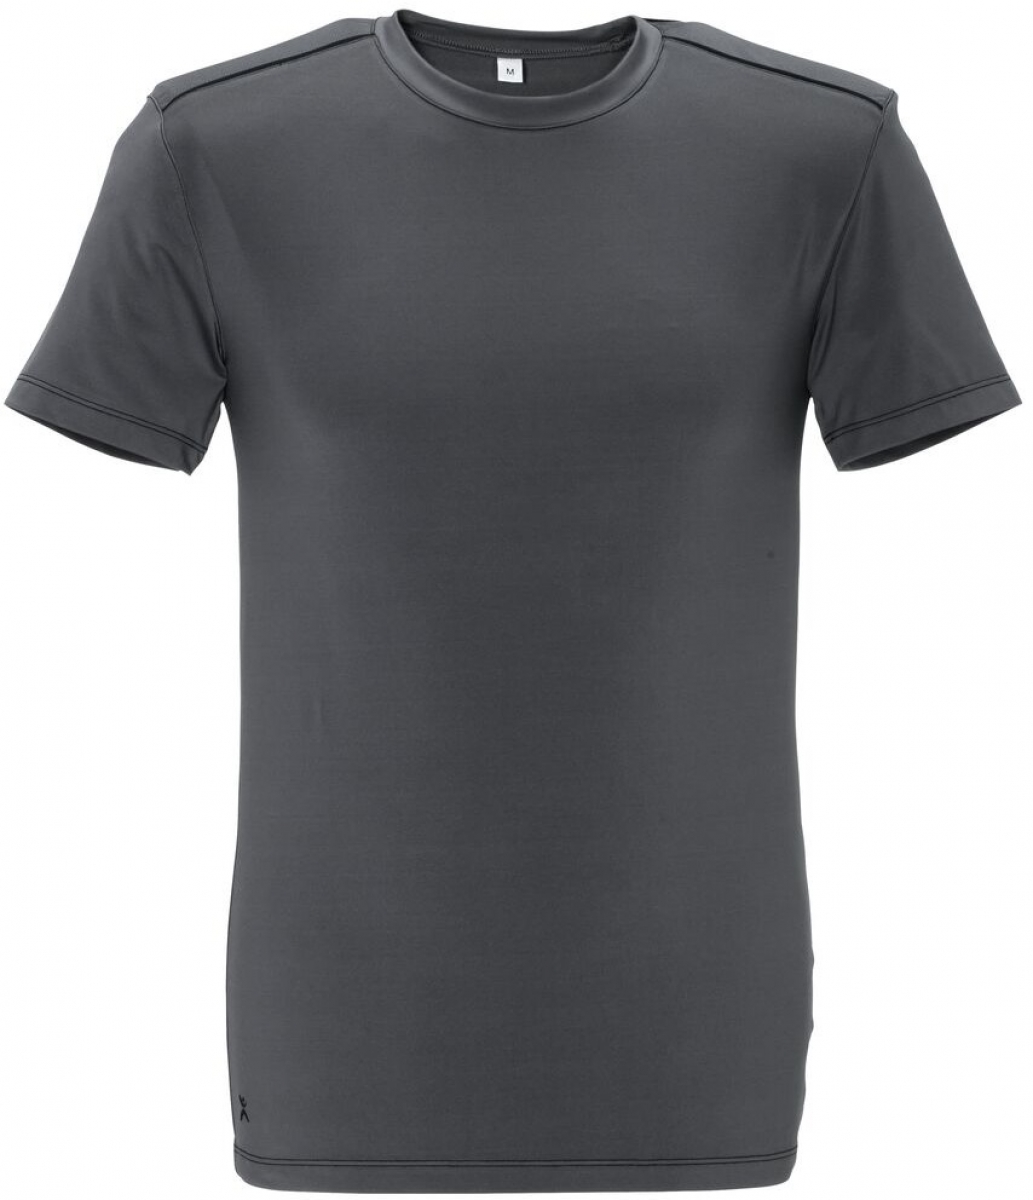 PLANAM-Worker-Shirts, T-Shirts, Duraline, 270 g/m, grau/schwarz